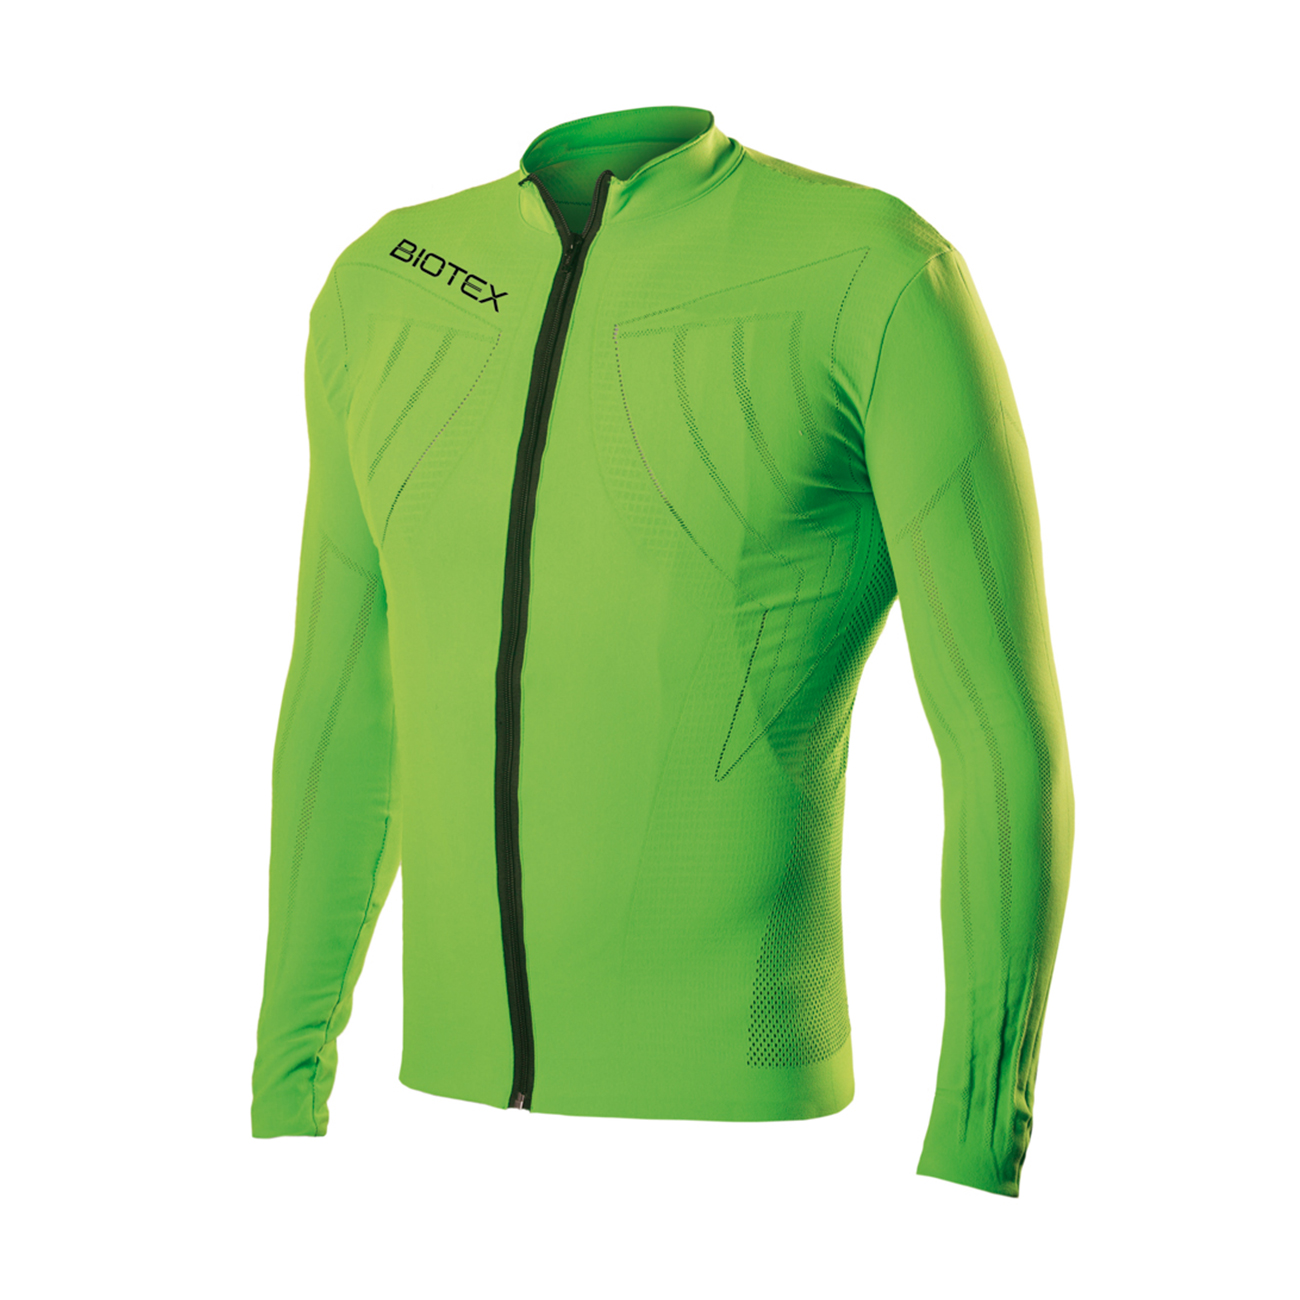 Biotex Letný cyklistický dres s dlhým rukávom - EMANA SUMMER - zelený XS-S